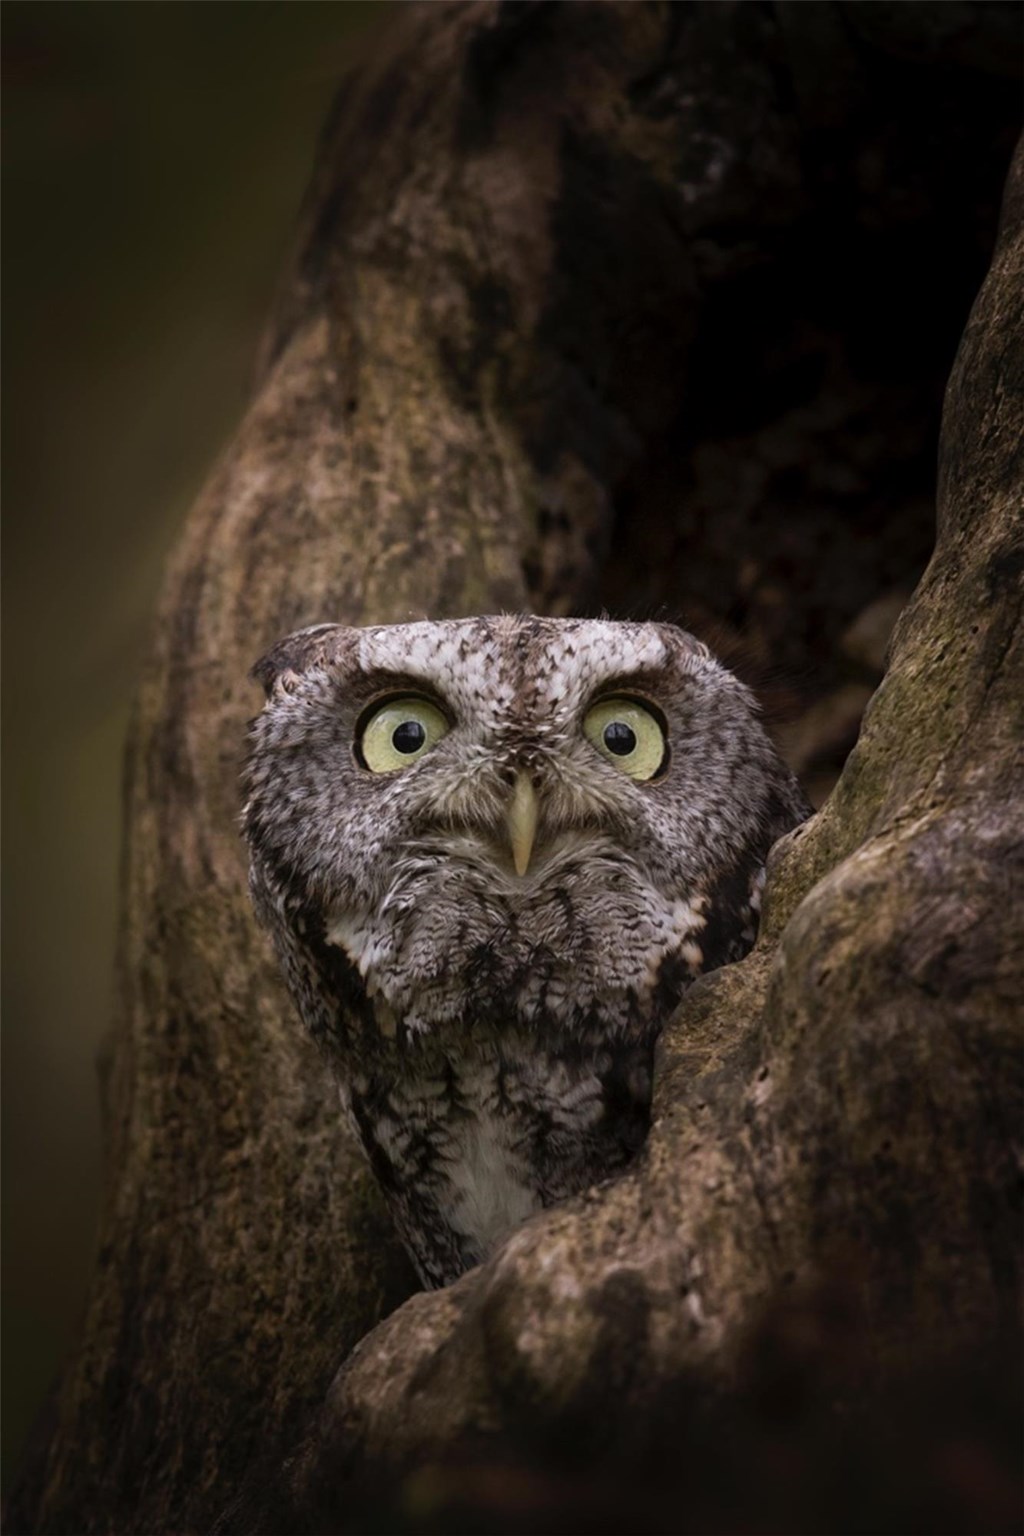 Eastern Screech Owl in a Tree Cavity